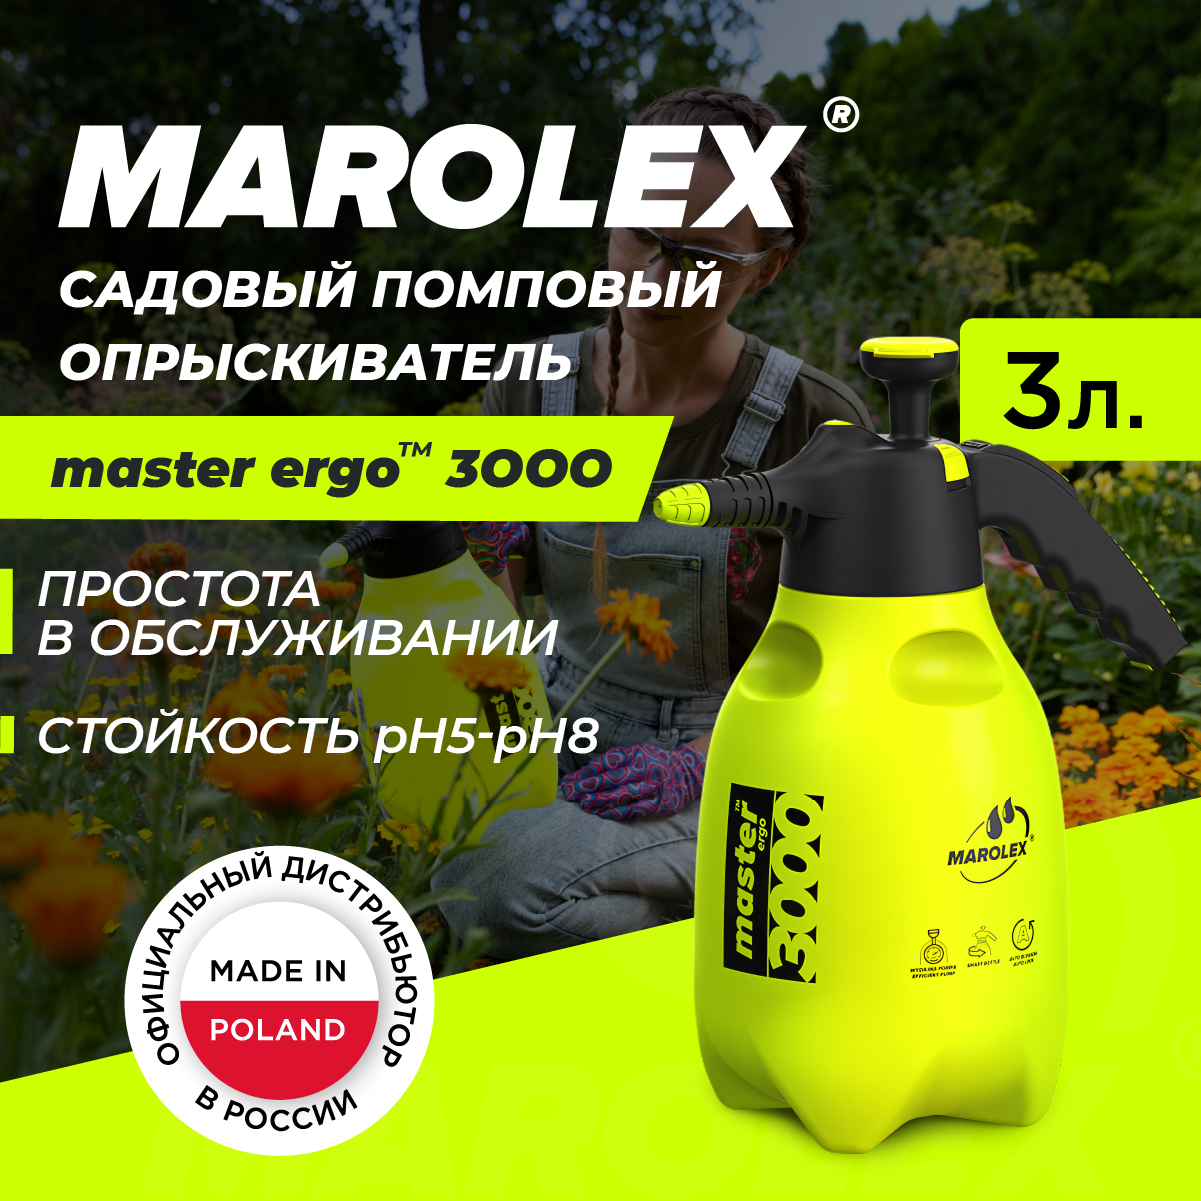 MAROLEX | Master ergo 3000 - Ручной садовый помповый опрыскиватель.